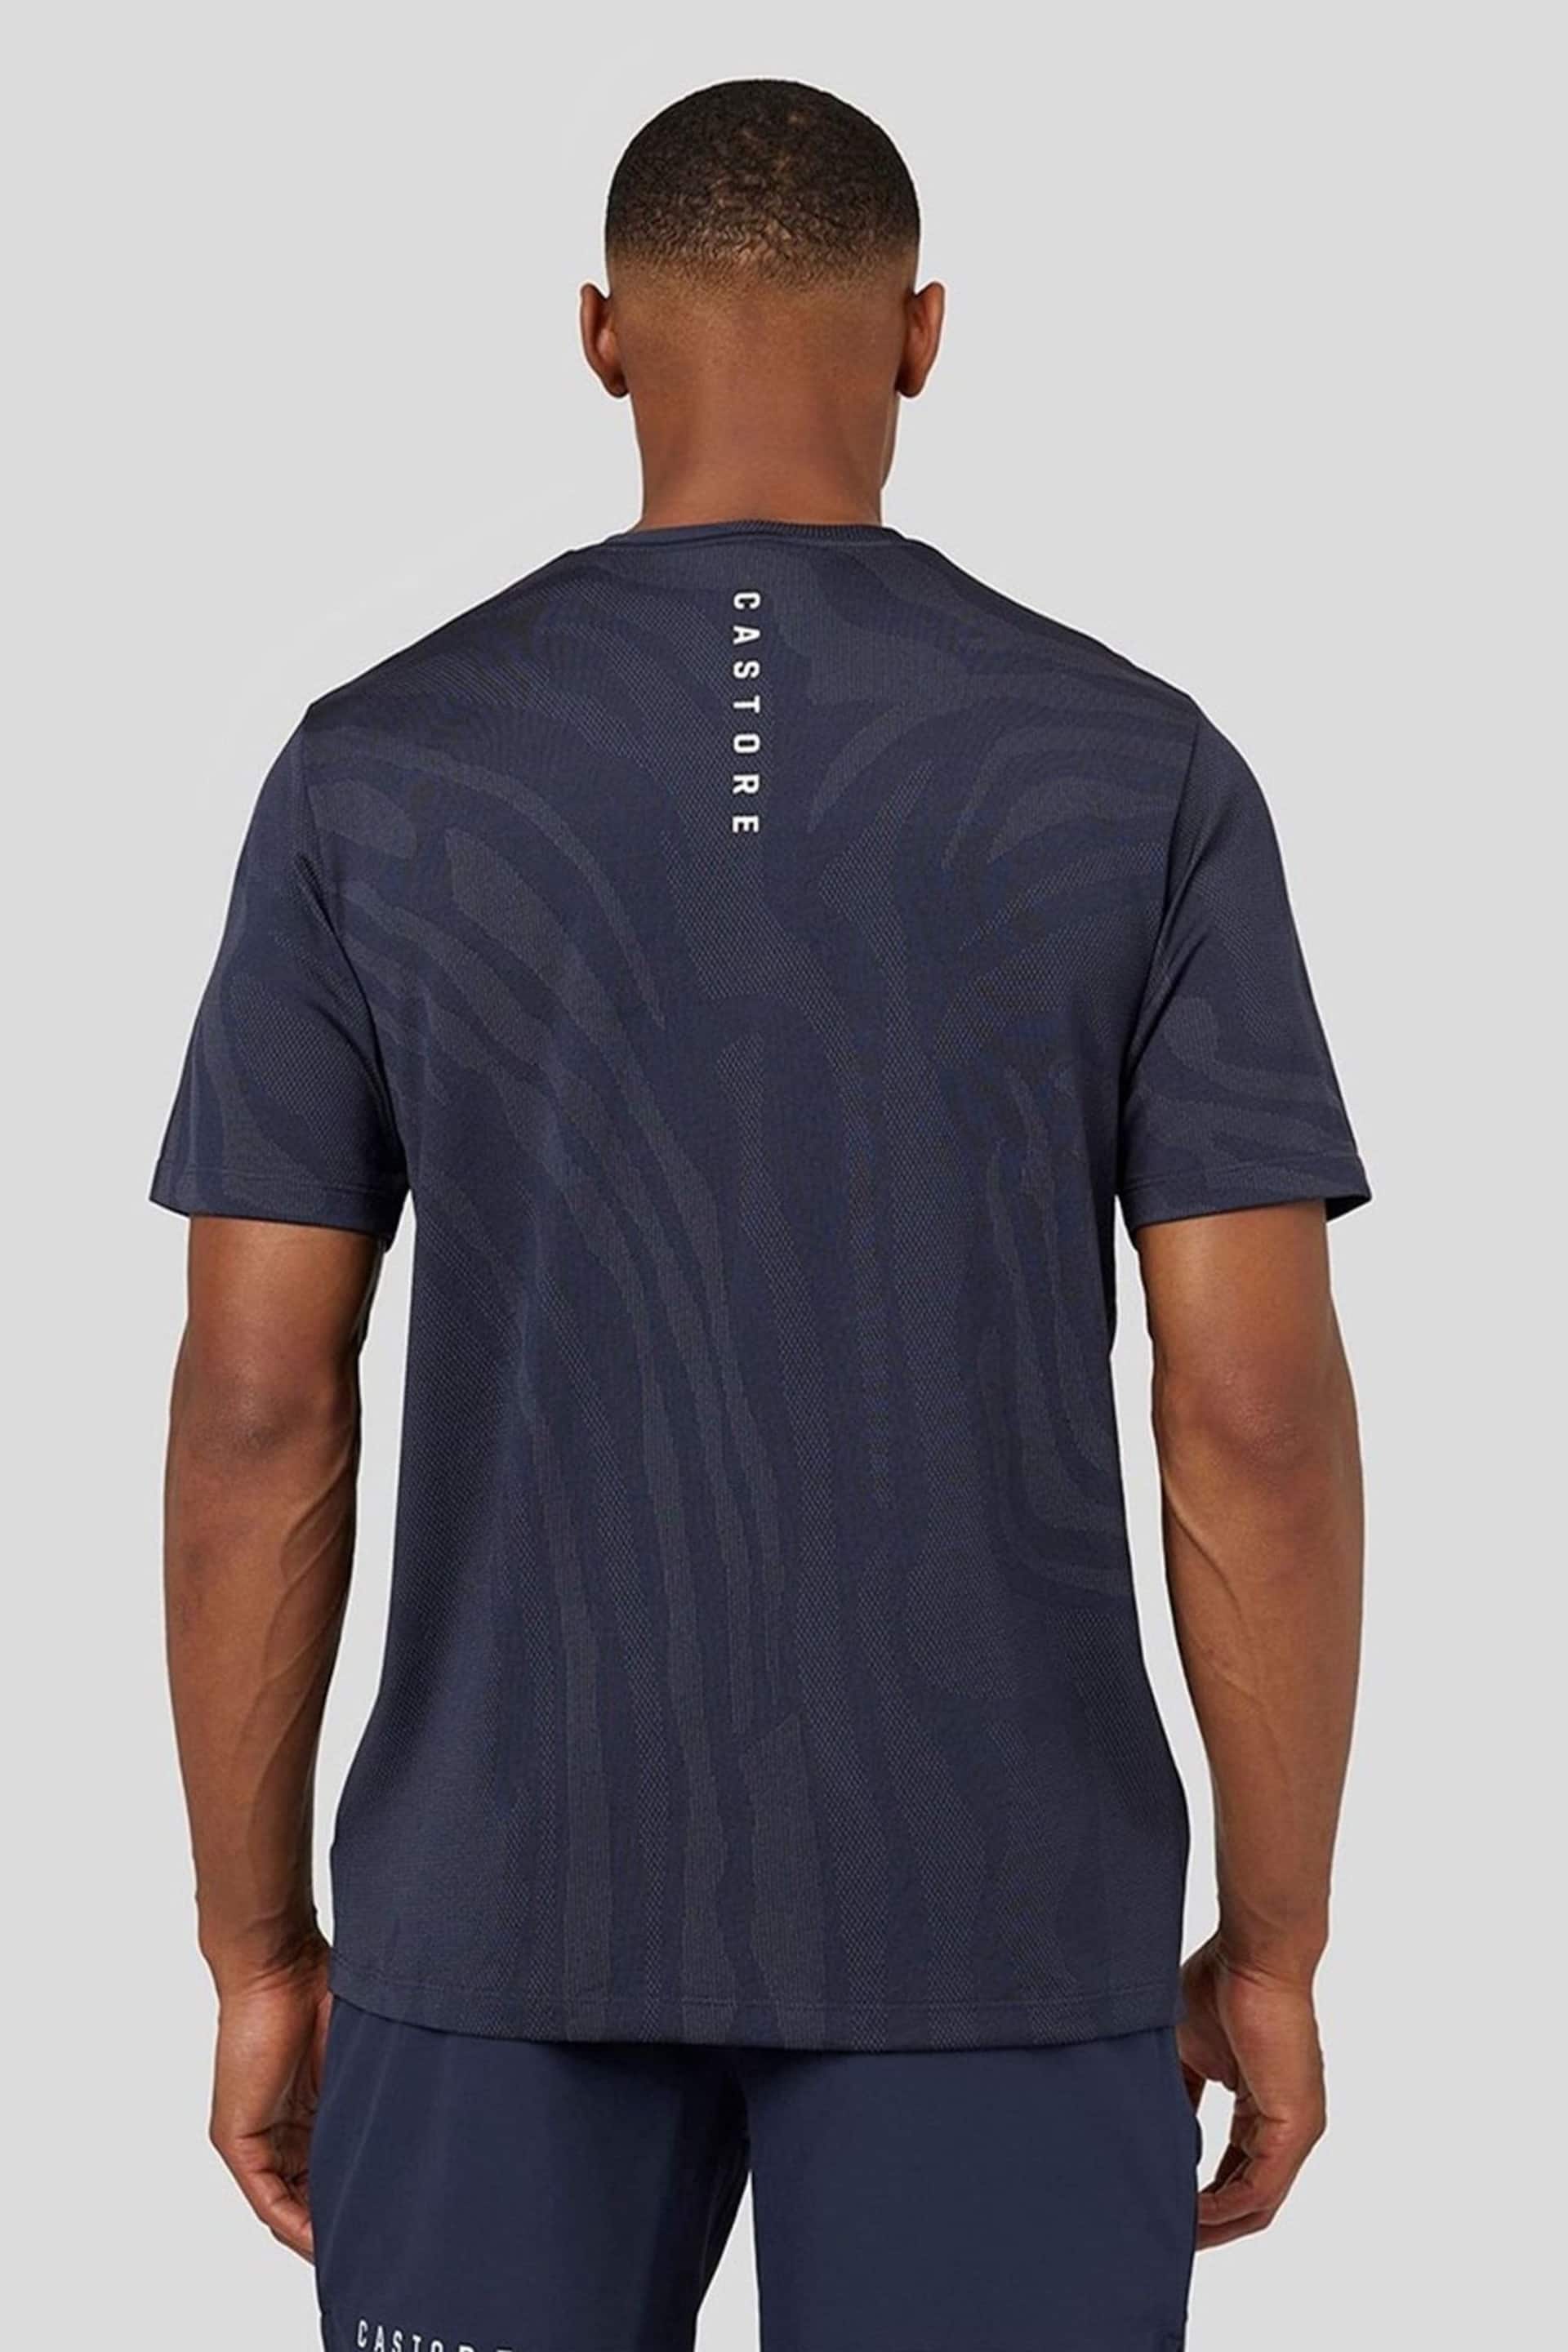 Castore Blue Core Tech T-shirt - Image 2 of 3